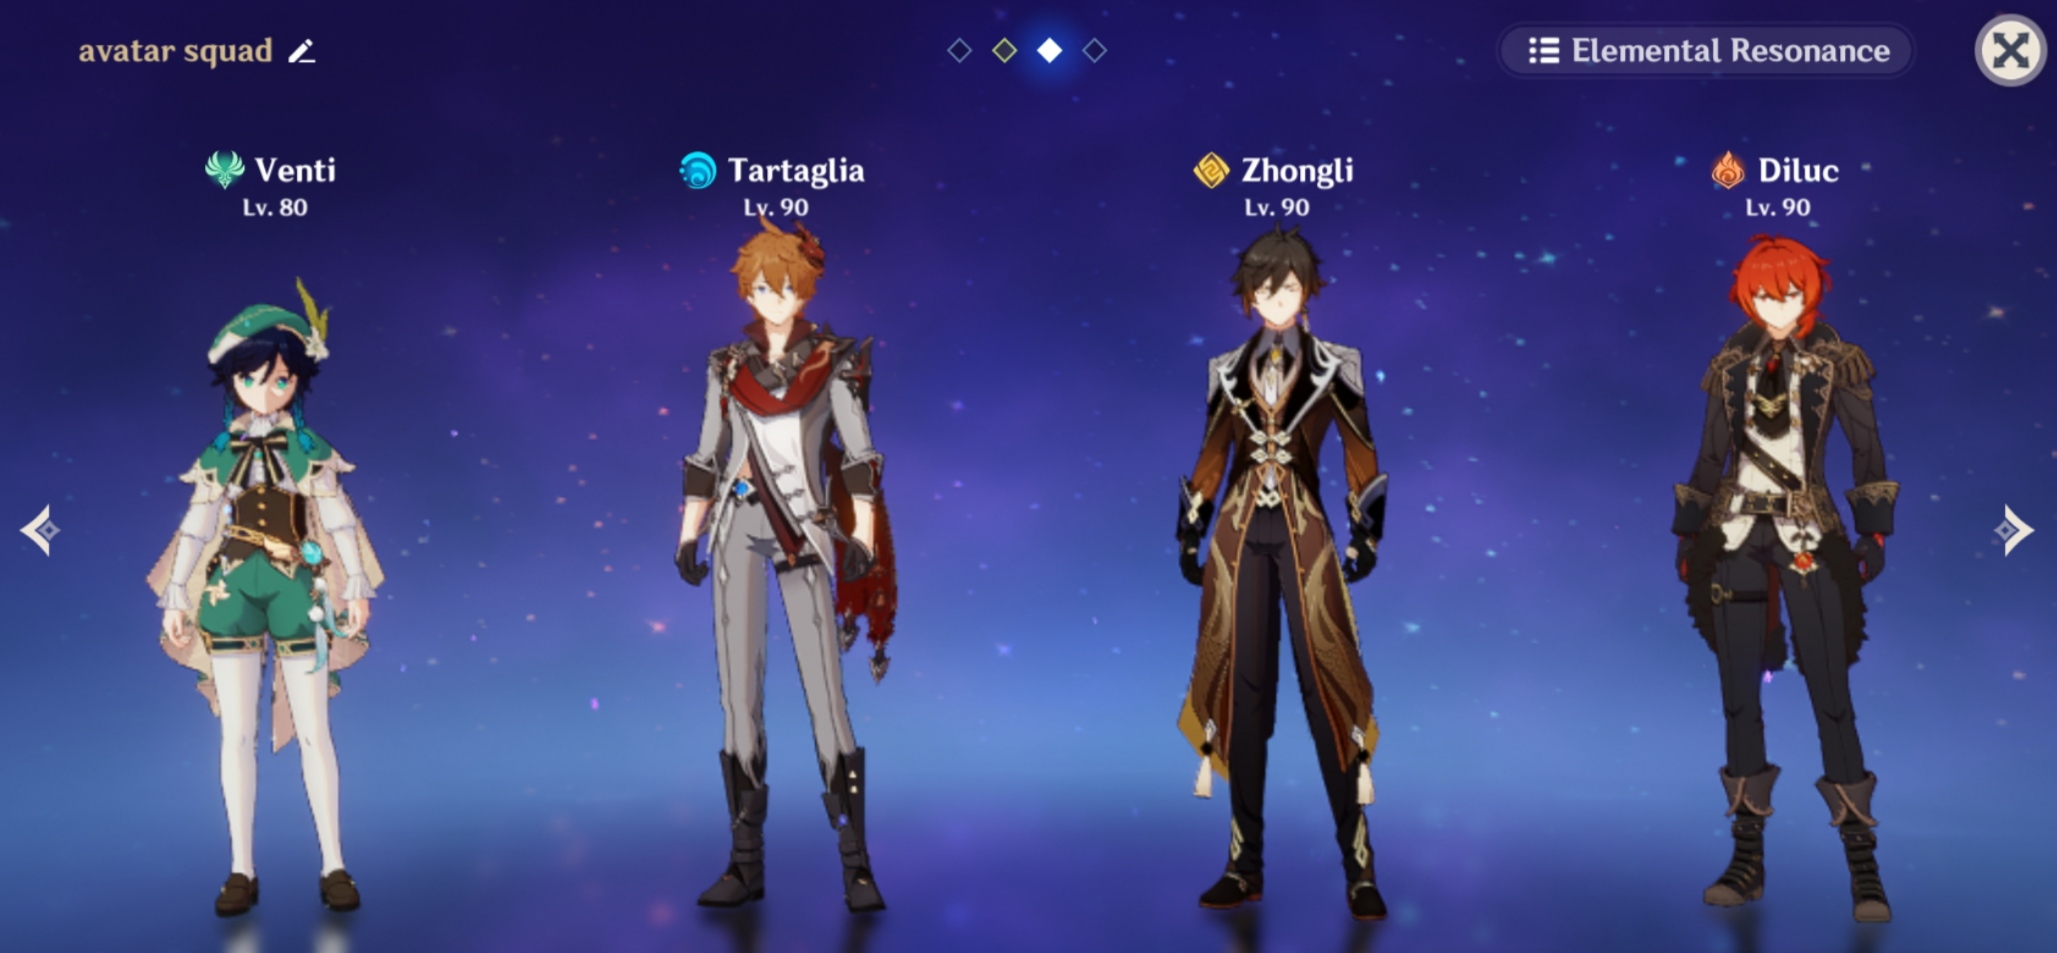 Hướng dẫn cách tải game Avatar Star online cho người mới chơi